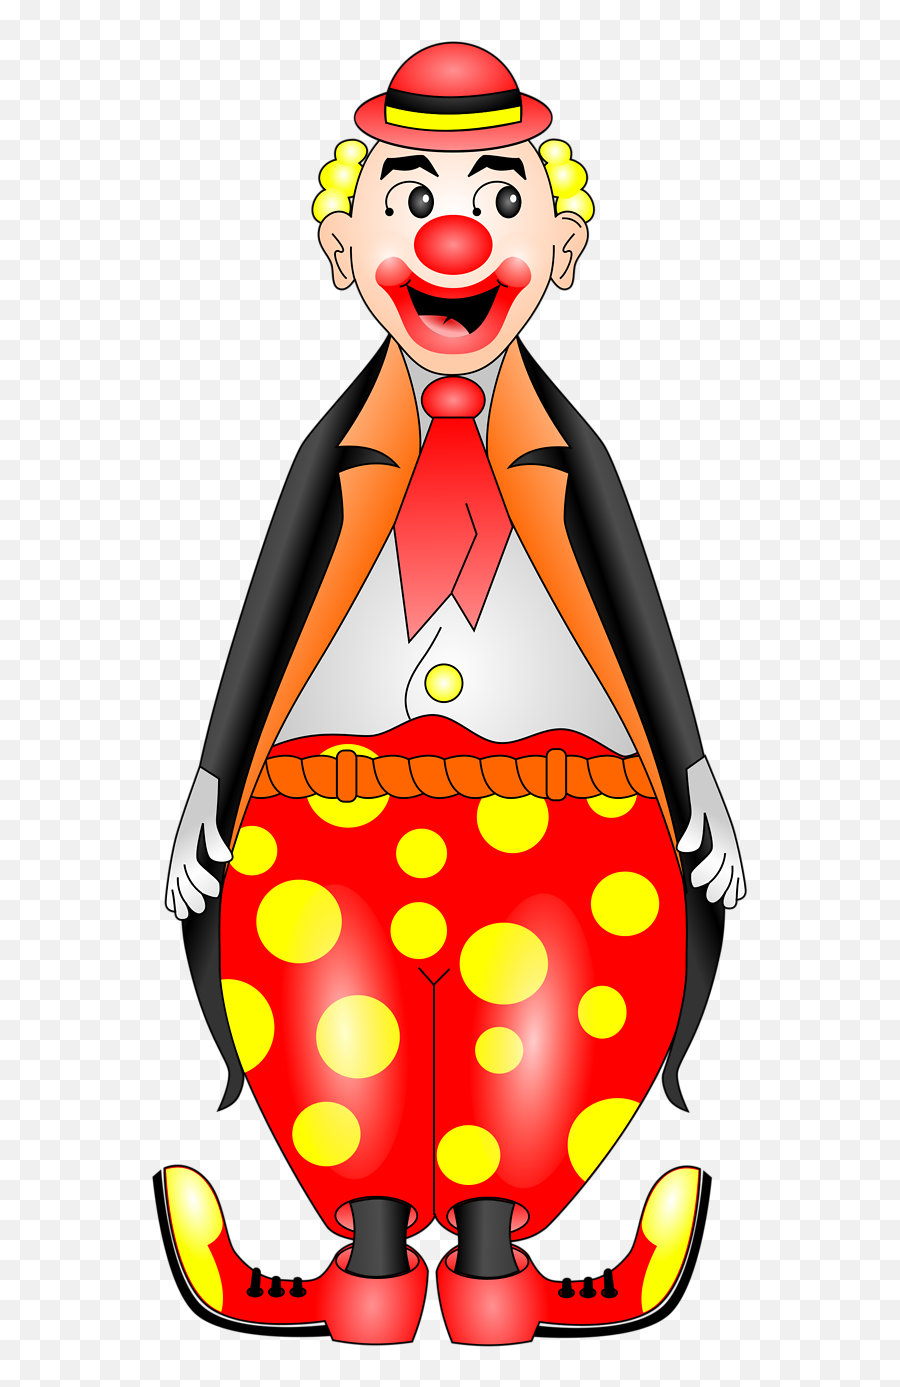 Clown - Circus Clown Transparent Background Emoji,Evil Clown Emoji